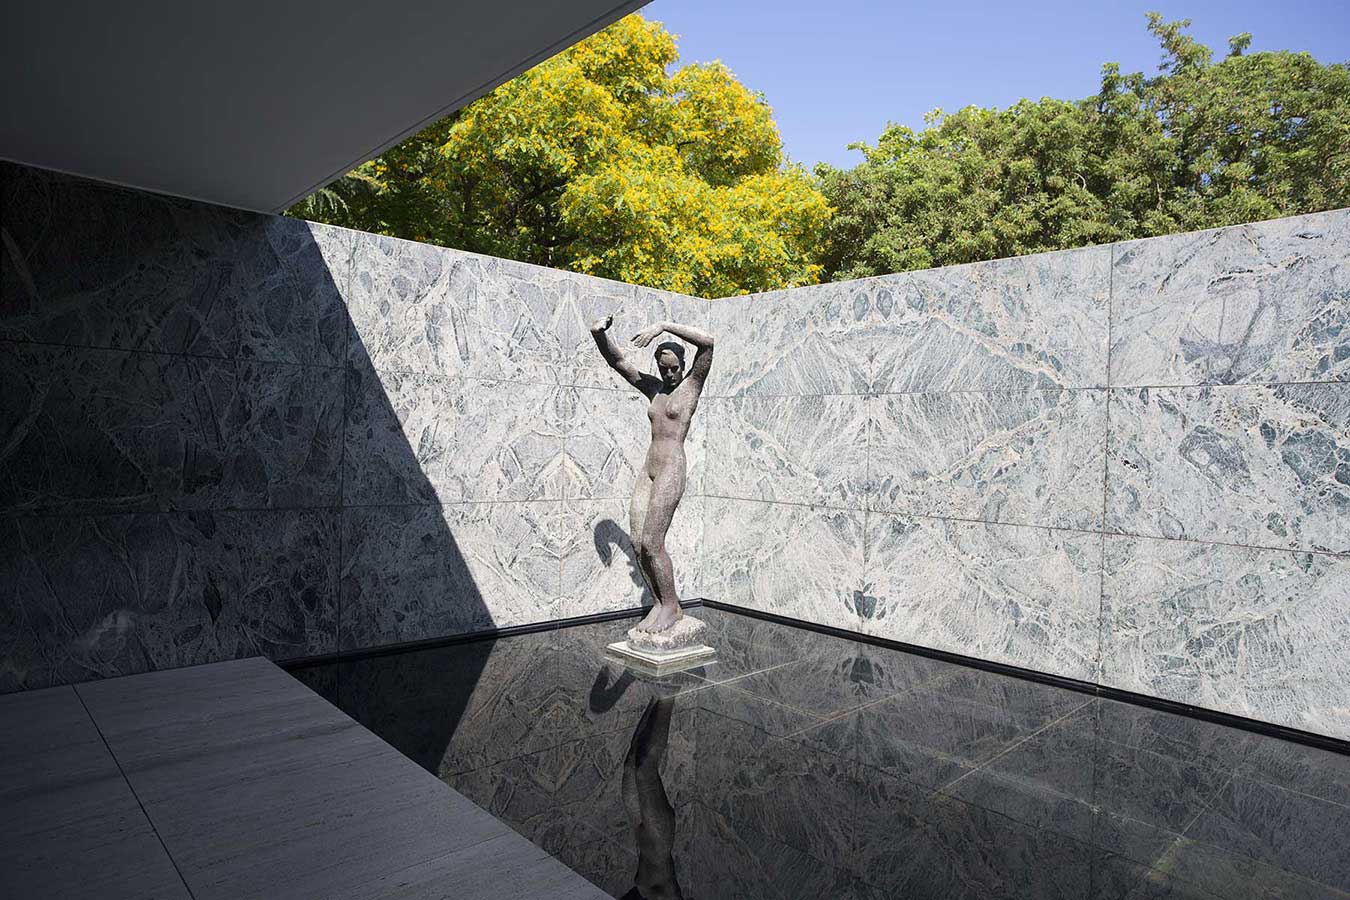 Pabellón de Barcelona de Mies van der Rohe, escultura